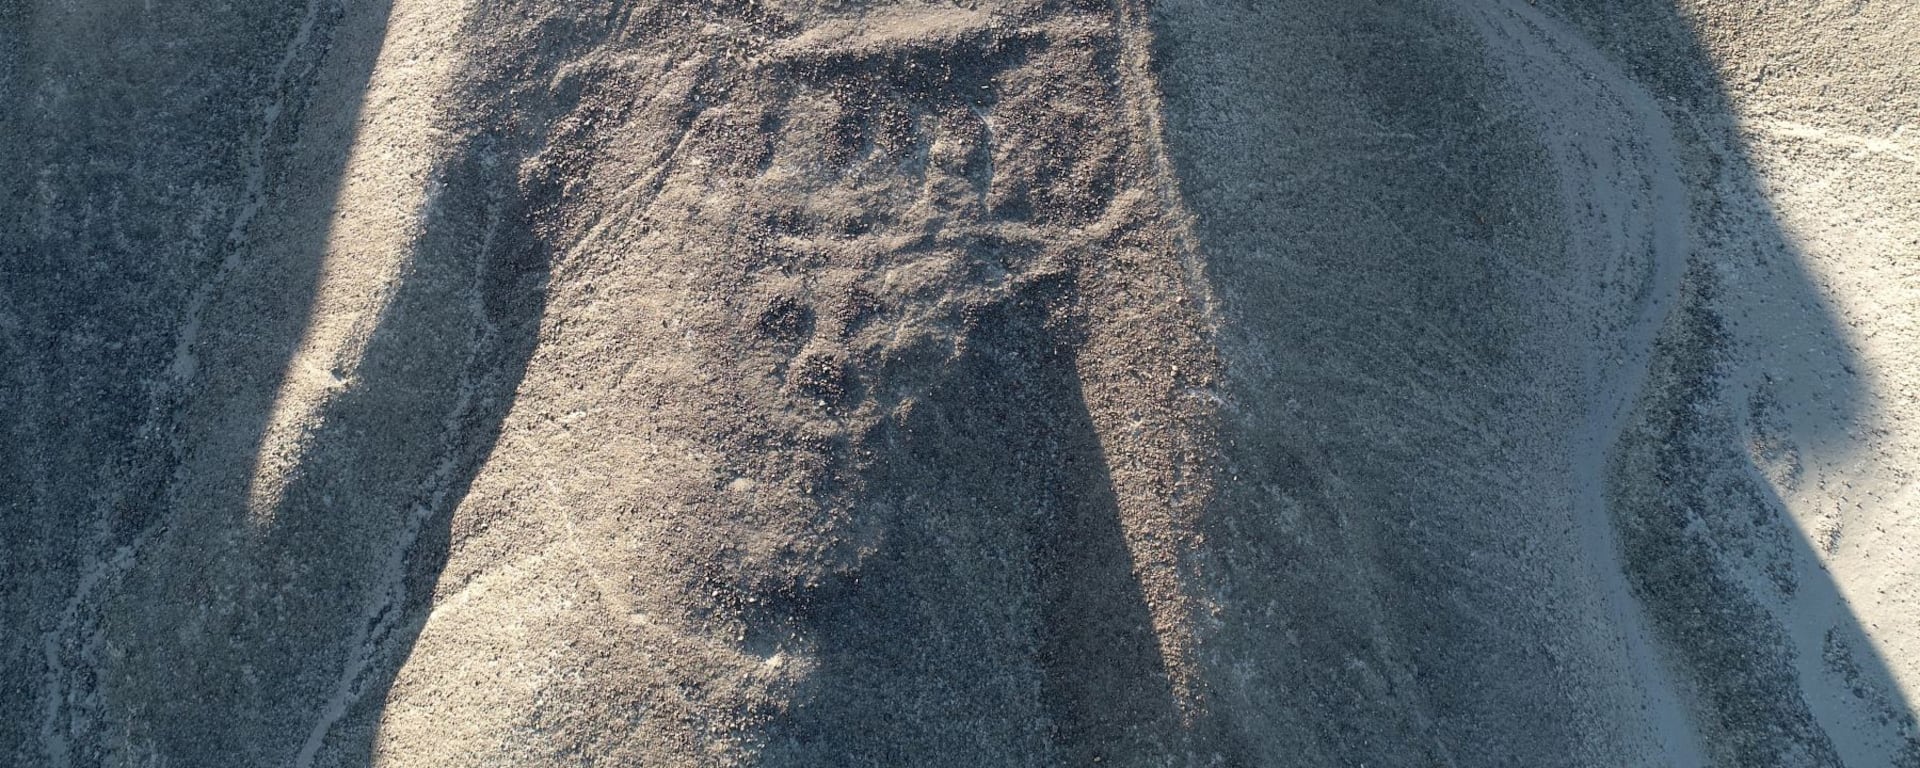 La historia detrás del descubrimiento de 29 nuevos geoglifos en Nazca: autofinanciamiento y largos años de trabajo